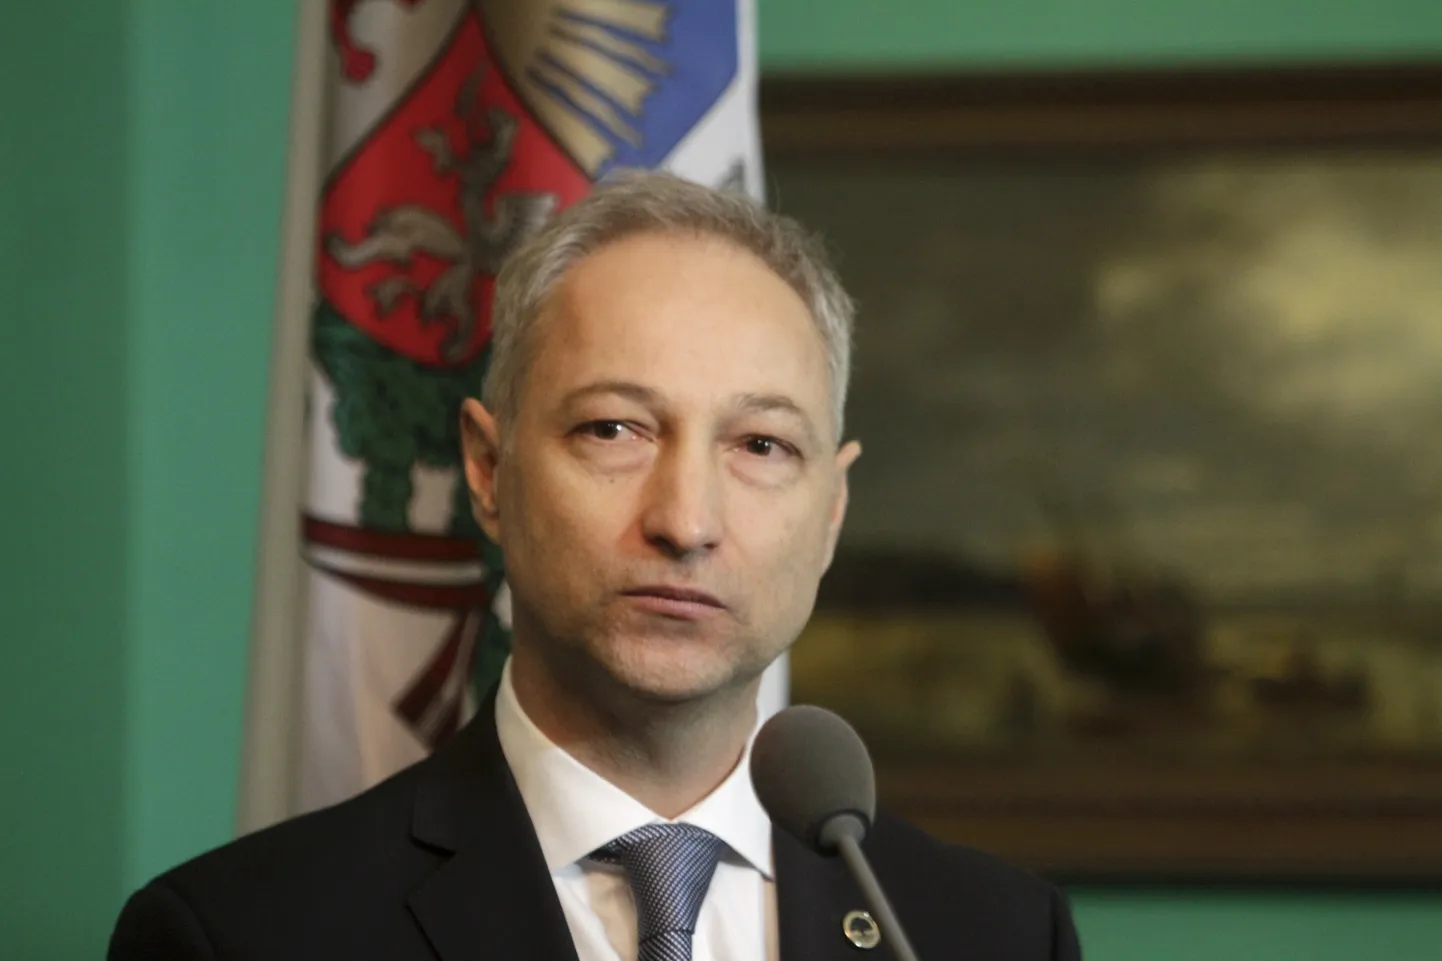 Uue Konservatiivse Partei (JKP) esimees Jānis Bordāns.